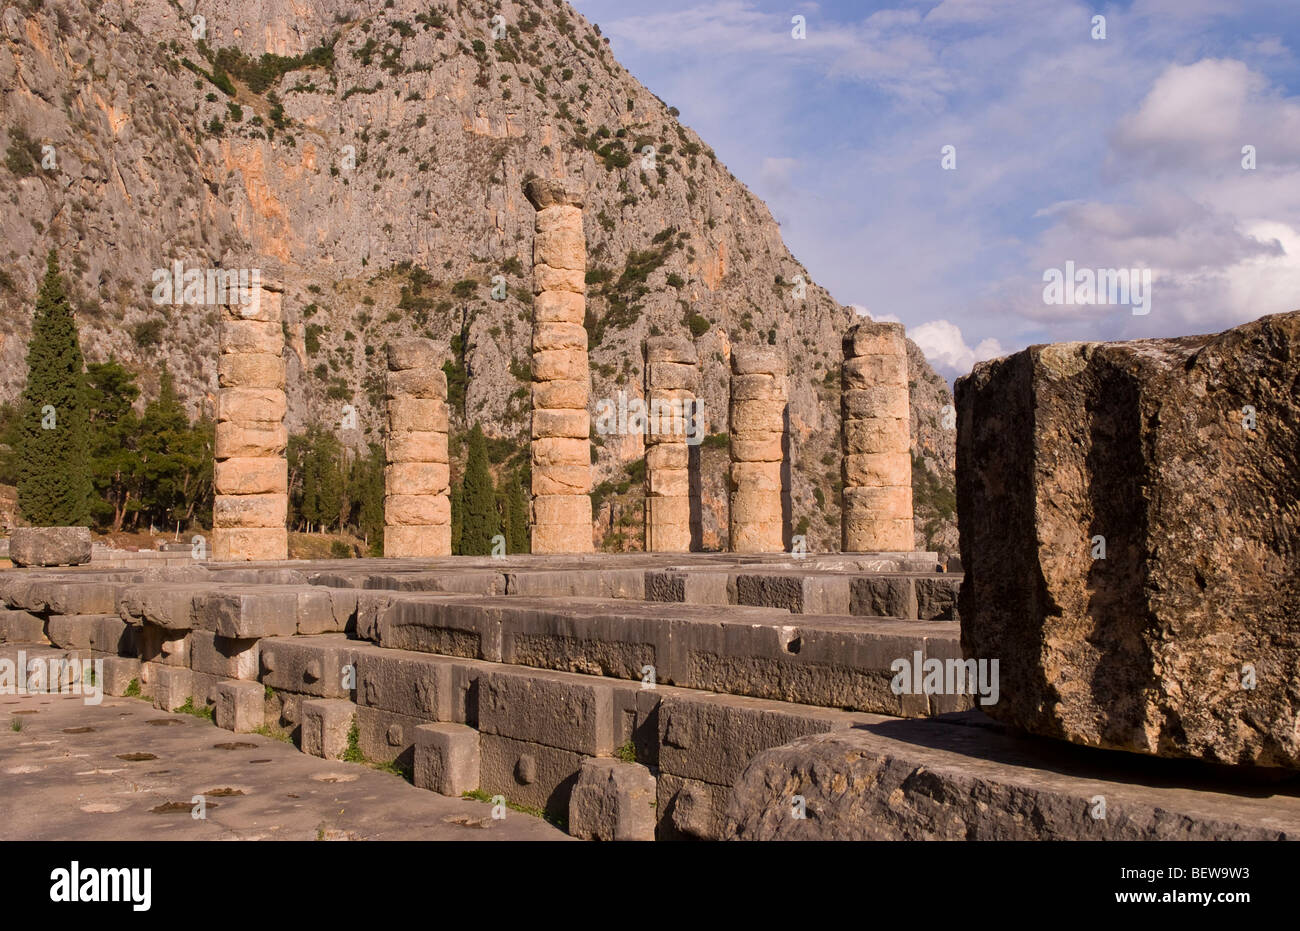 Temple of Apollo, Delphi, Greece Stock Photo